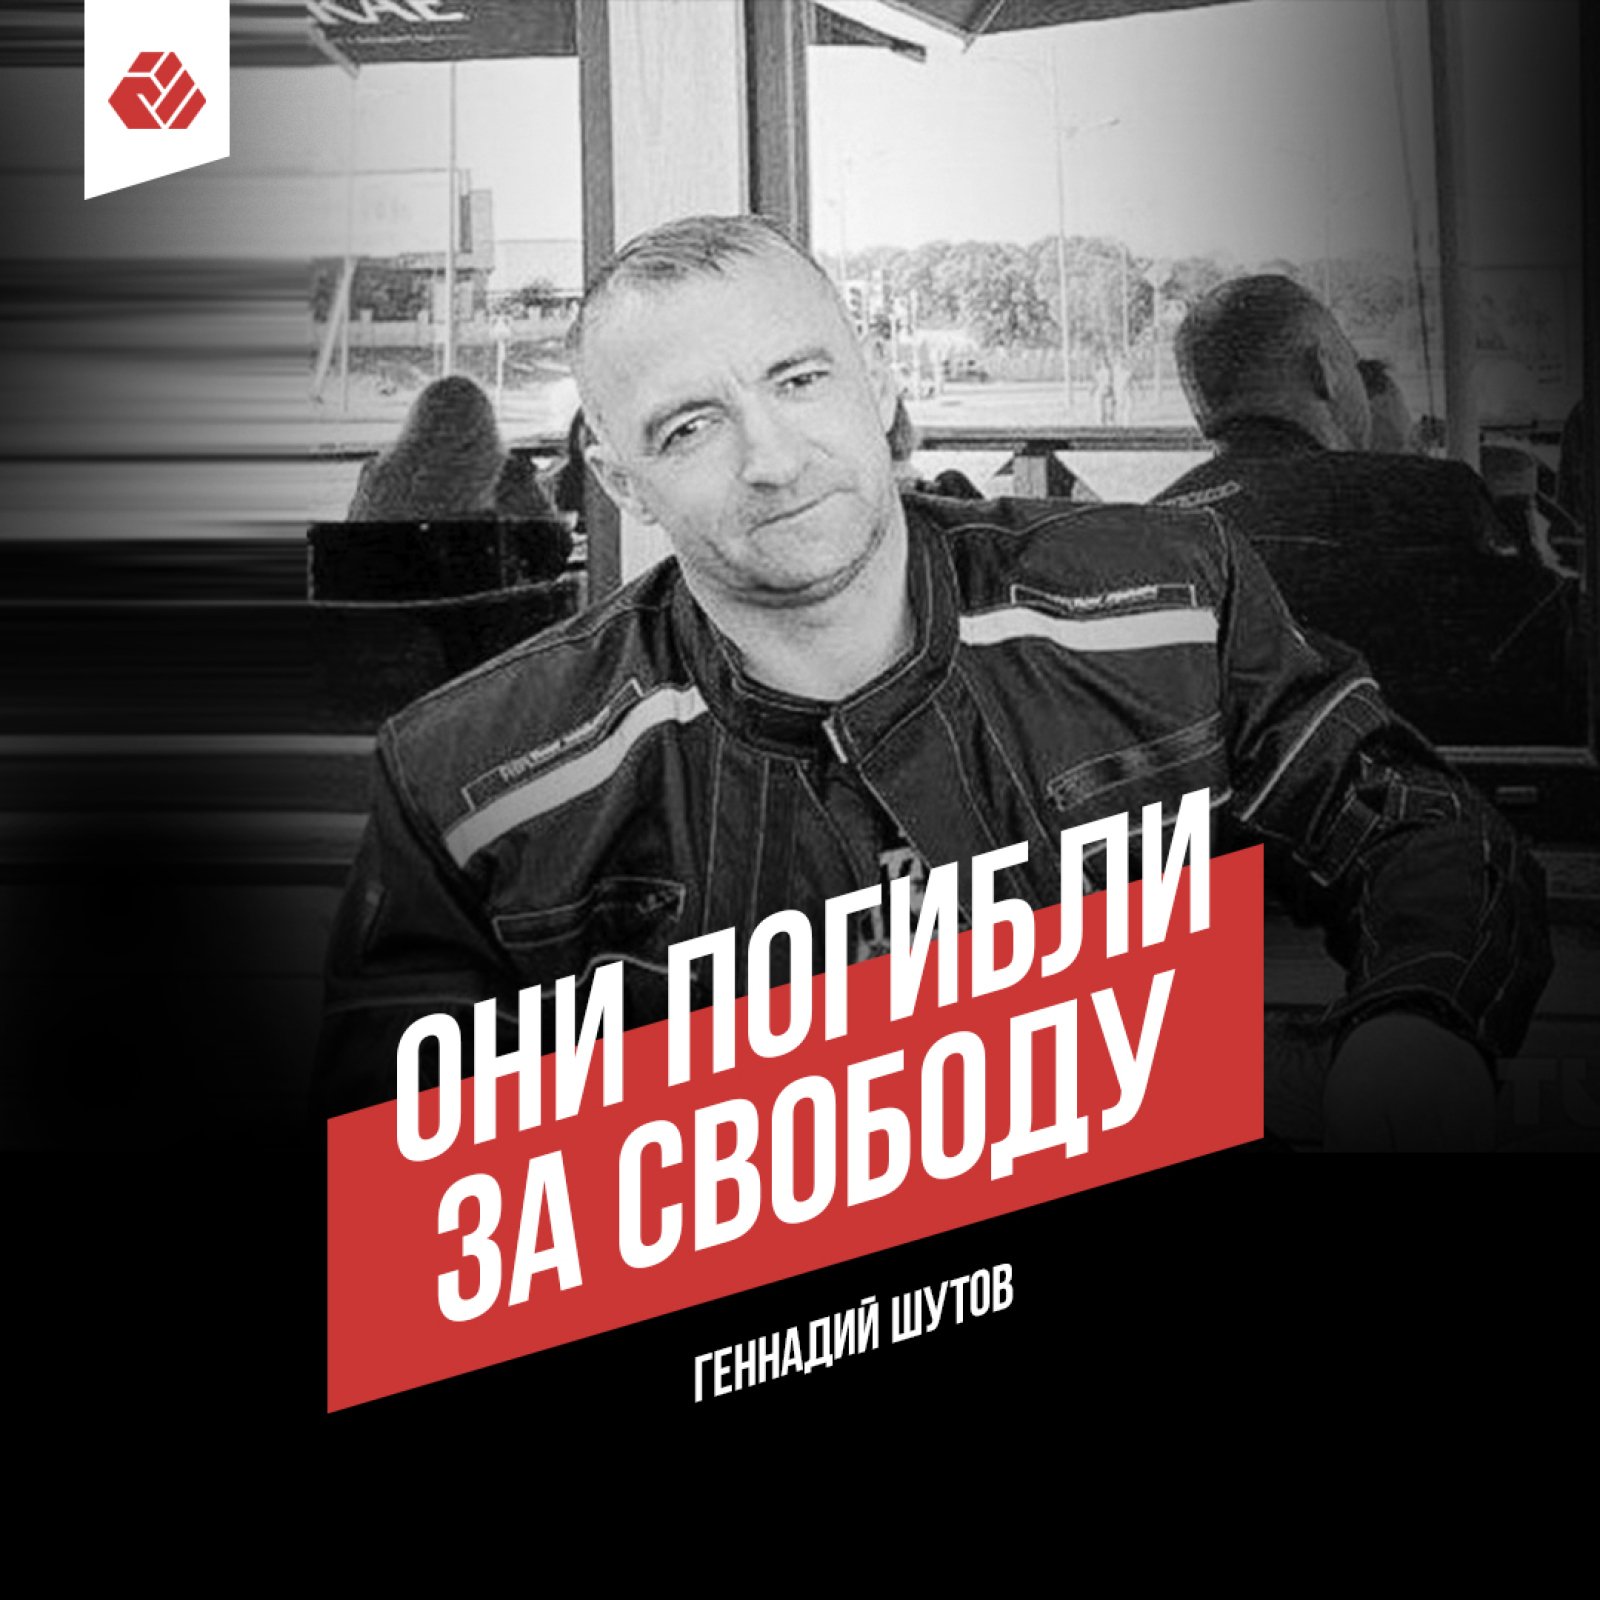 Year since the death of Gennady Shutov